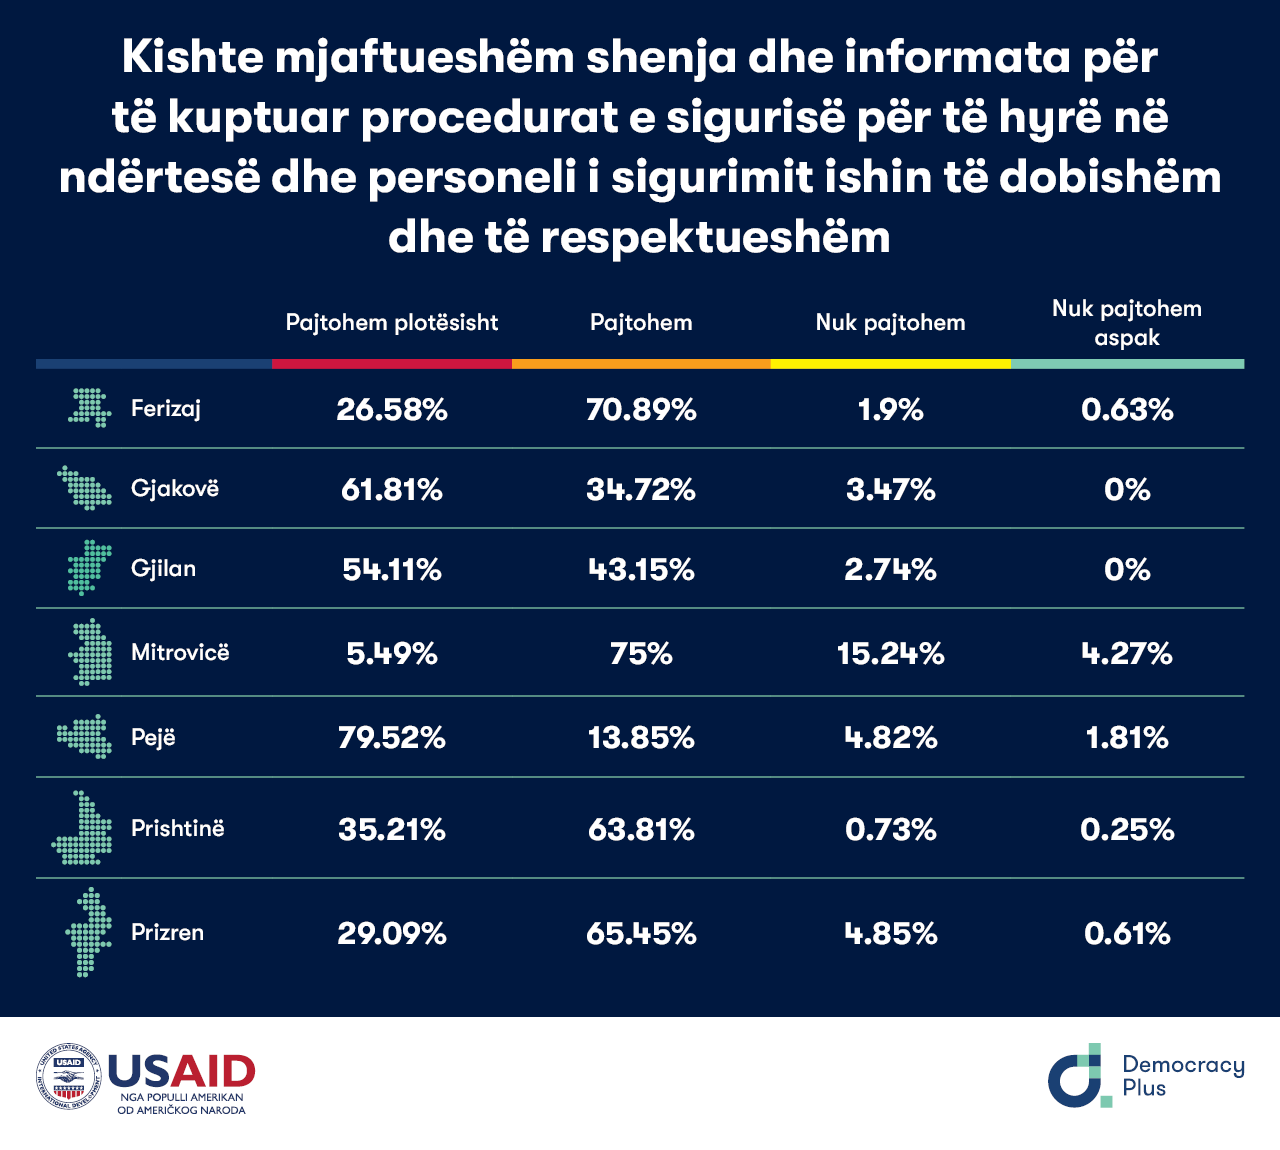 Rezultatet e anketës në shtatë Gjykatat Themelore të Kosovë rreth pajtueshmërisë së qytetarëve për informacionet dhe shenjat në hyrje të gjykatës